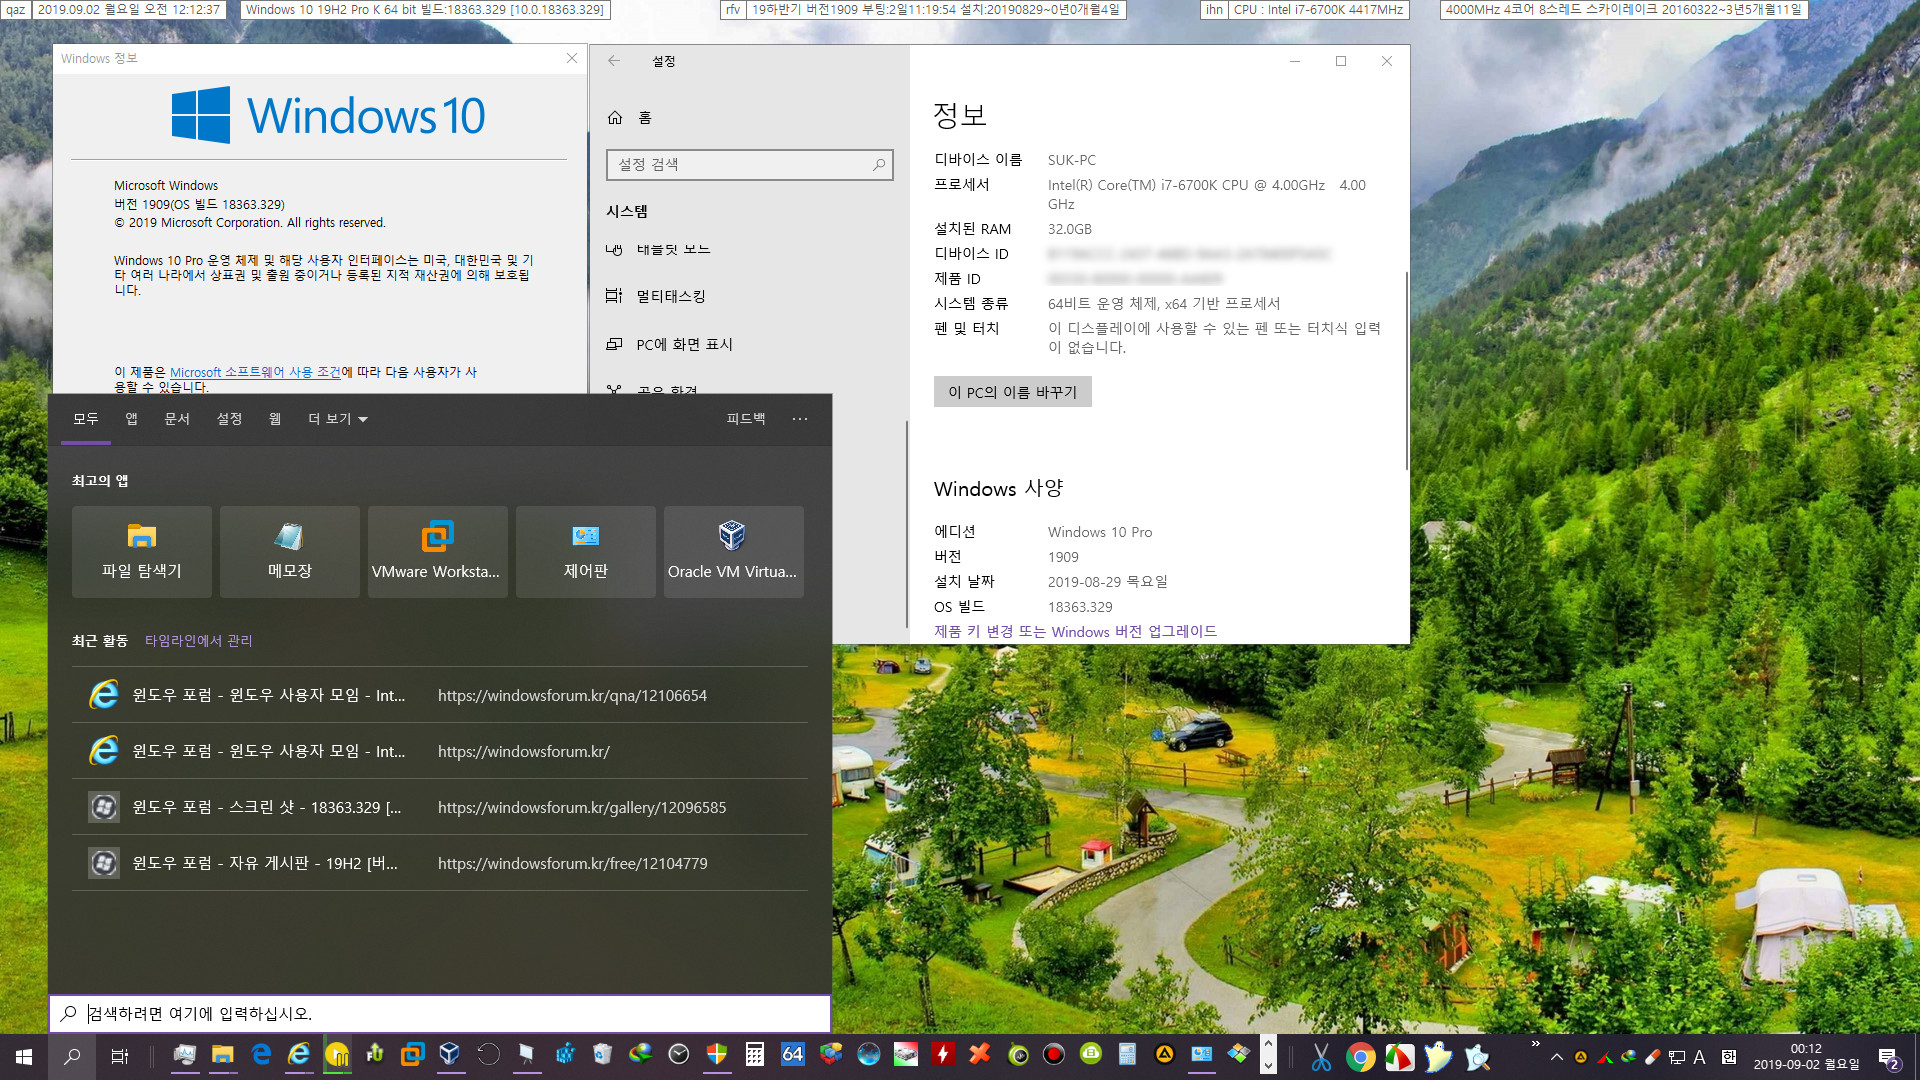 Windows 10 19H2 버전 1909 (OS 빌드 18363.329) 릴리스 프리뷰 - 검색창 잘 작동합니다. 시작 메뉴 딜레이도 없습니다 2019-09-02_001238.jpg